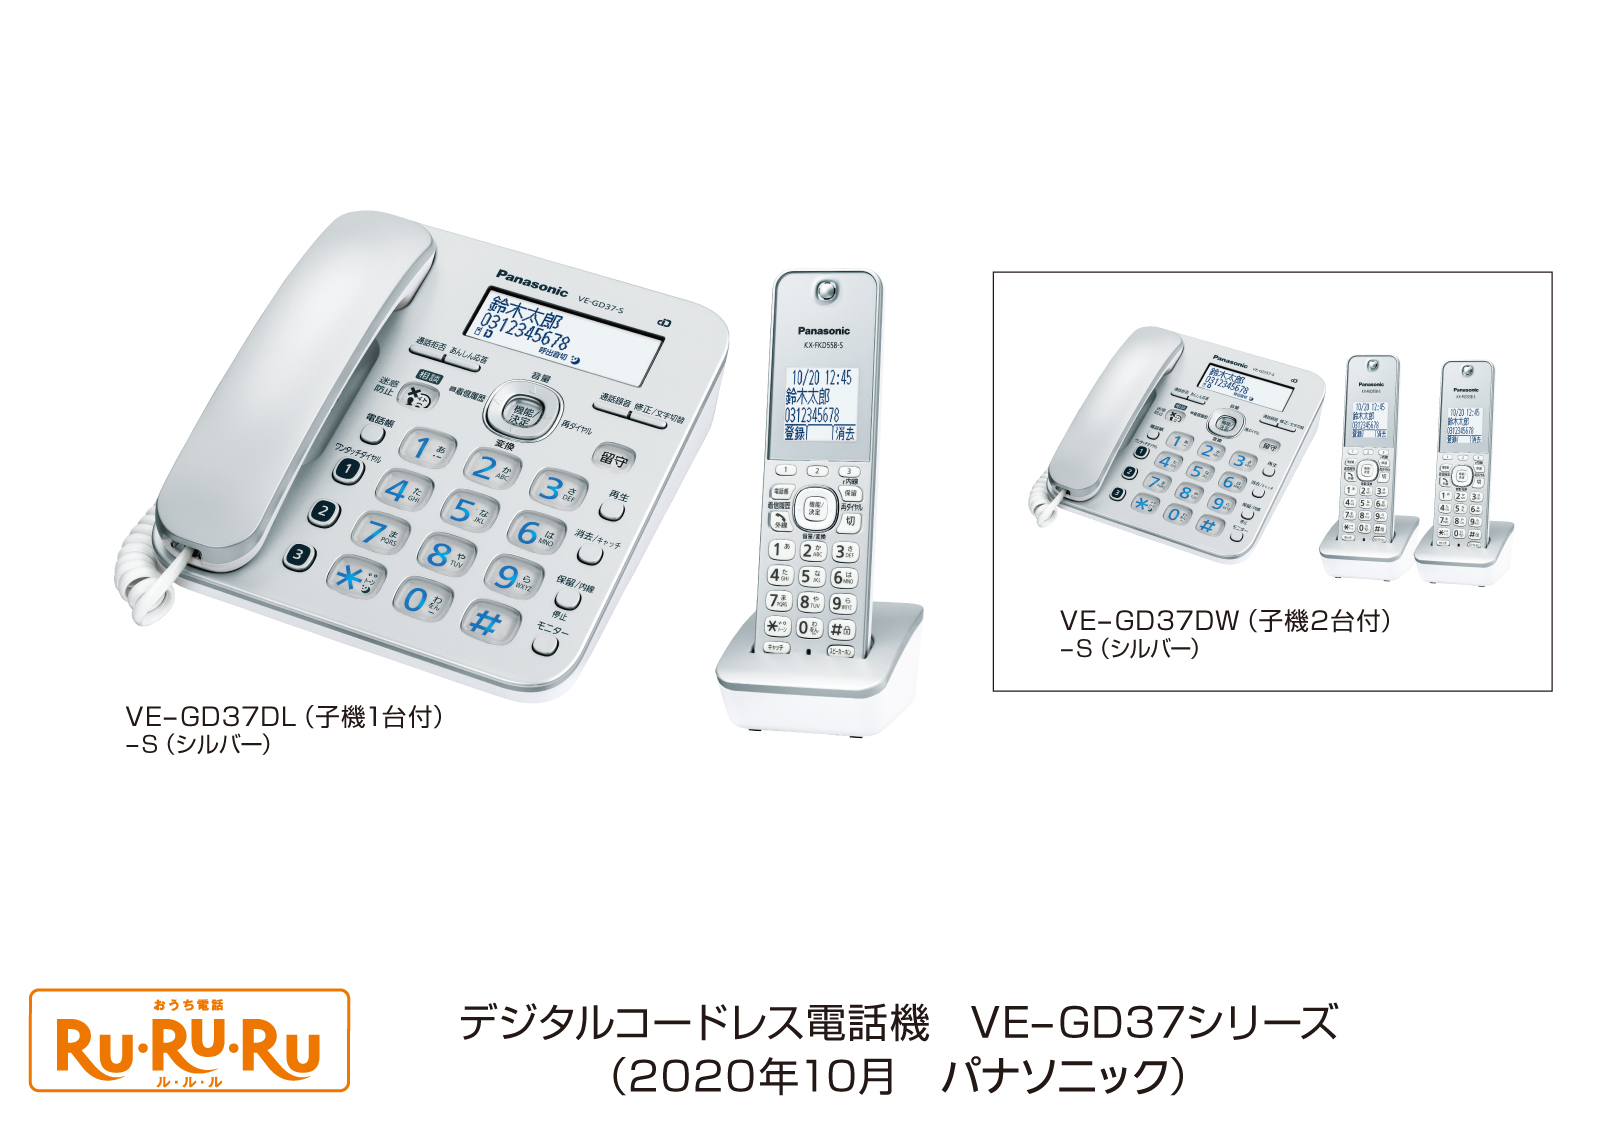 登場! パナソニック RU デジタルコードレス電話機 子機1台付き 1.9GHz DECT準拠方式 ホワイト VE-GZ51DL-W